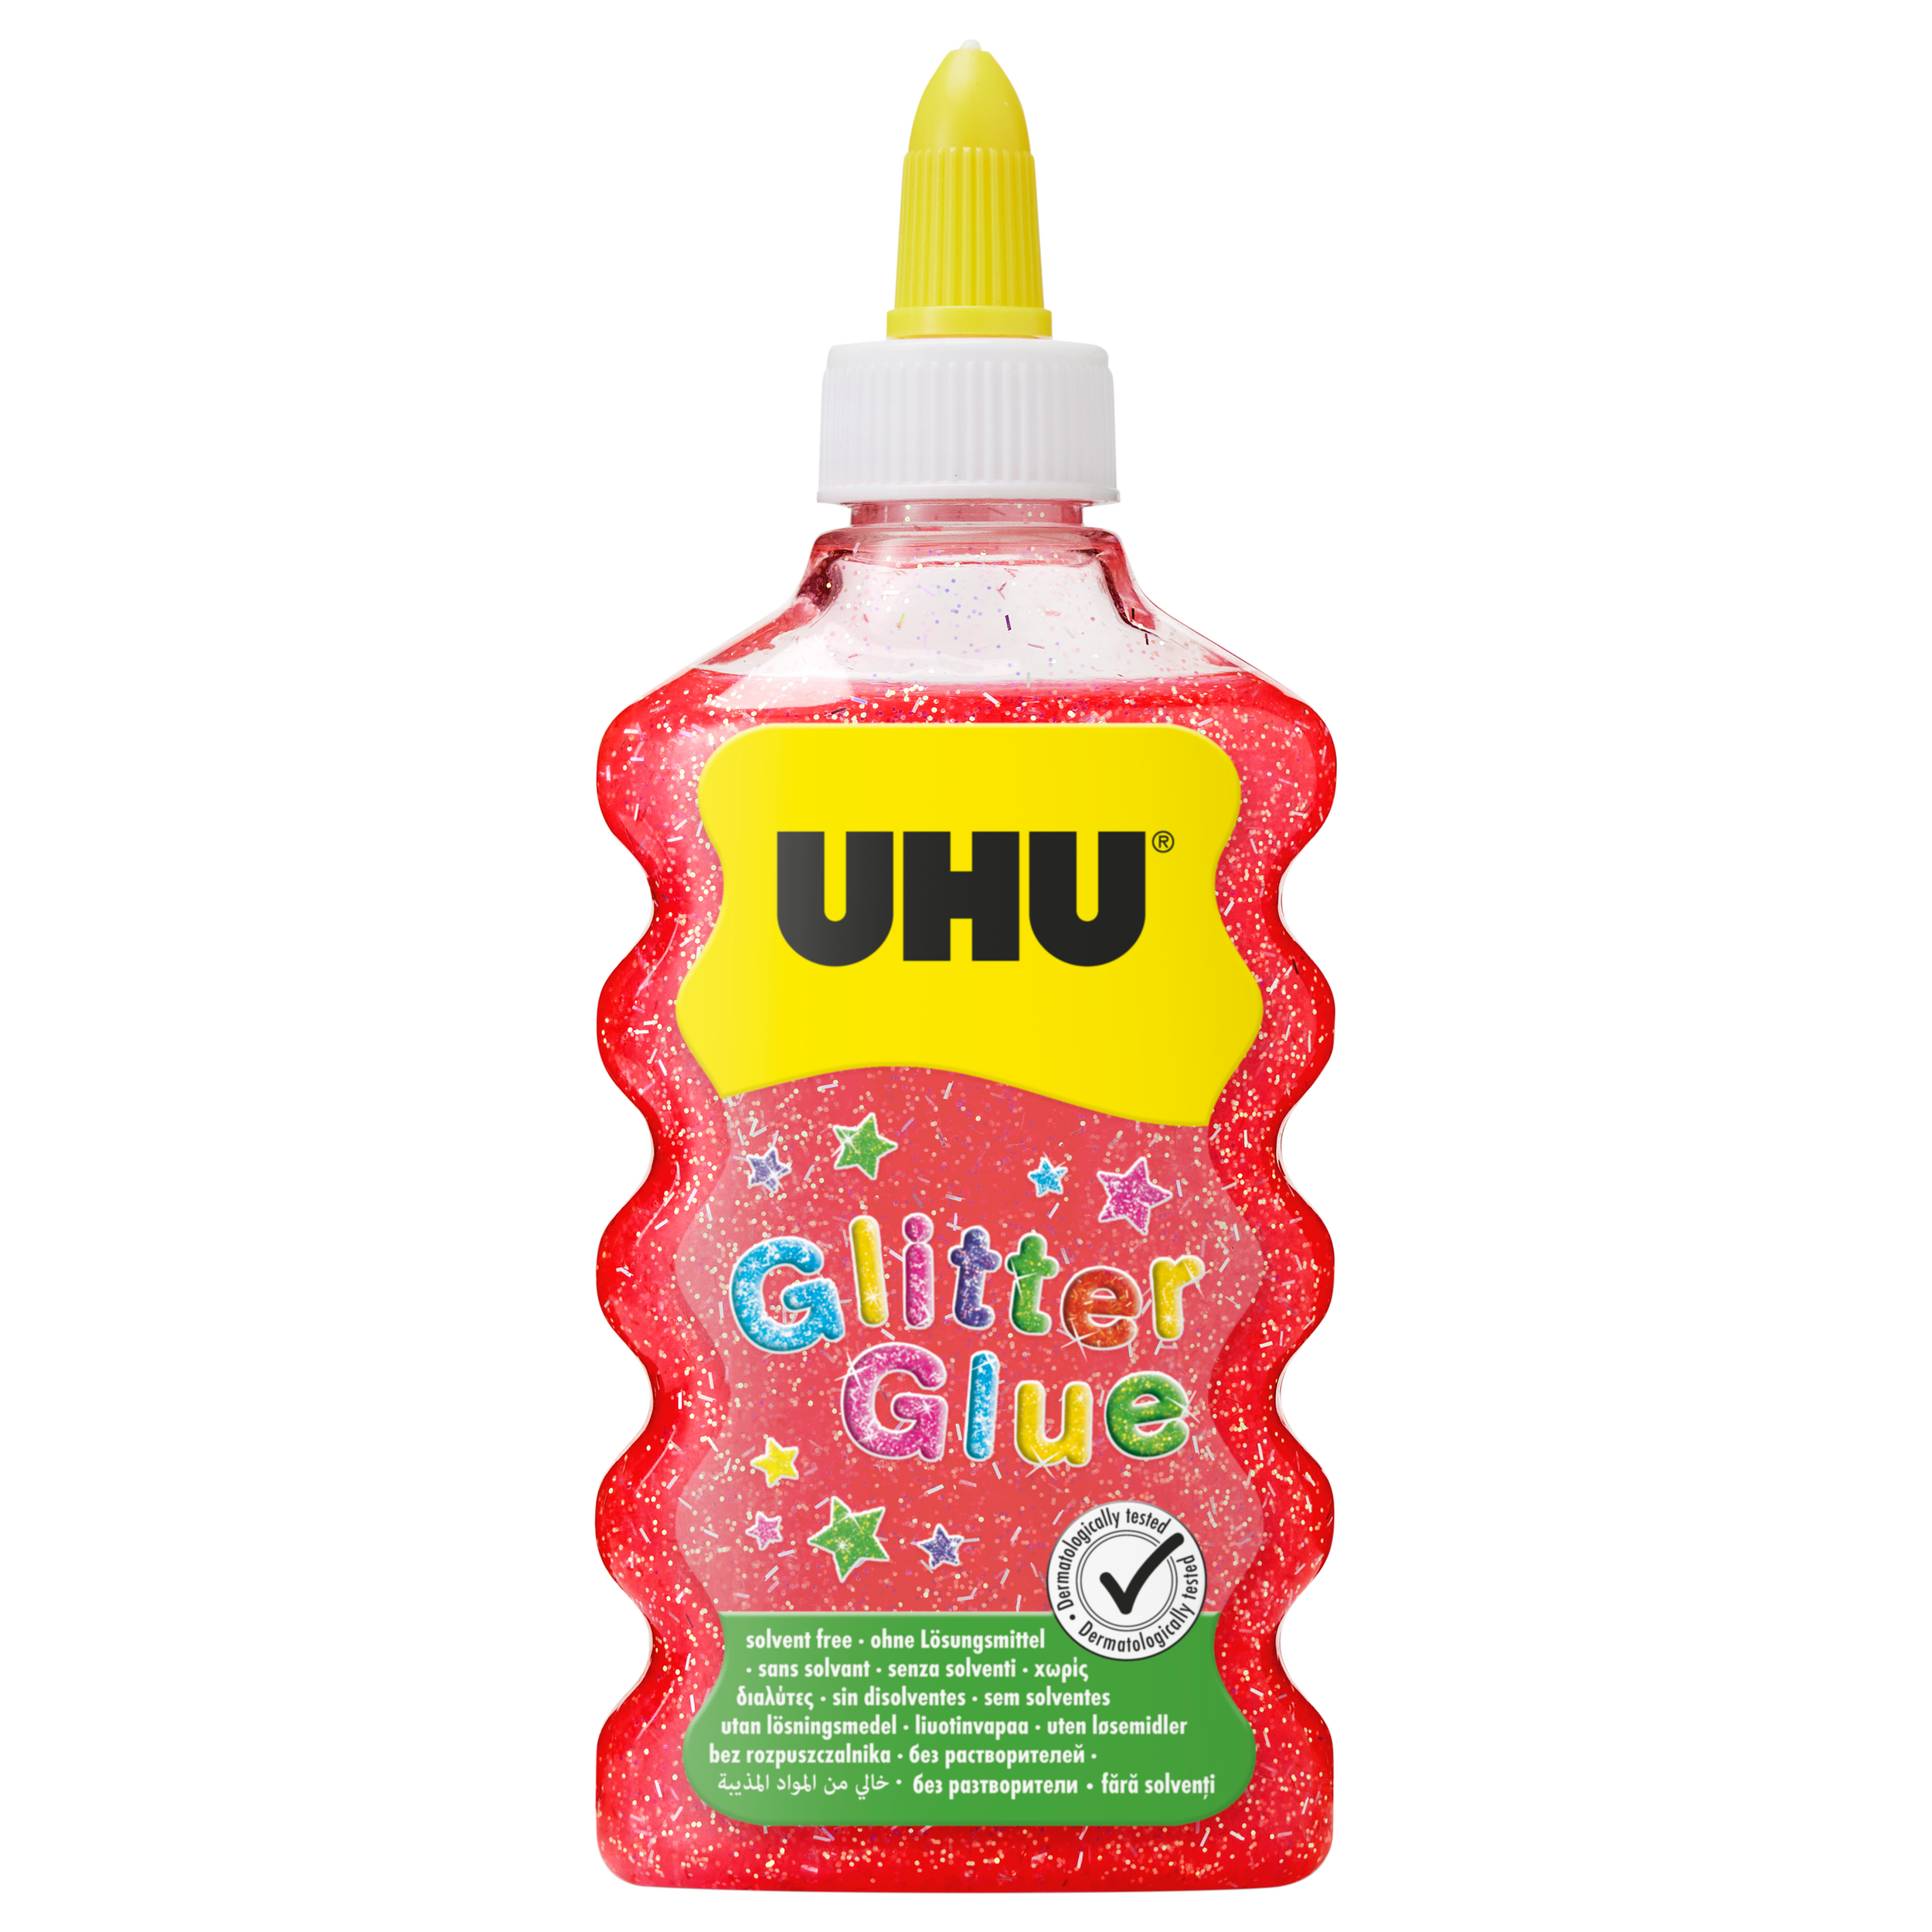 UHU Glitter Glue Maxi 510574 rouge, 185g